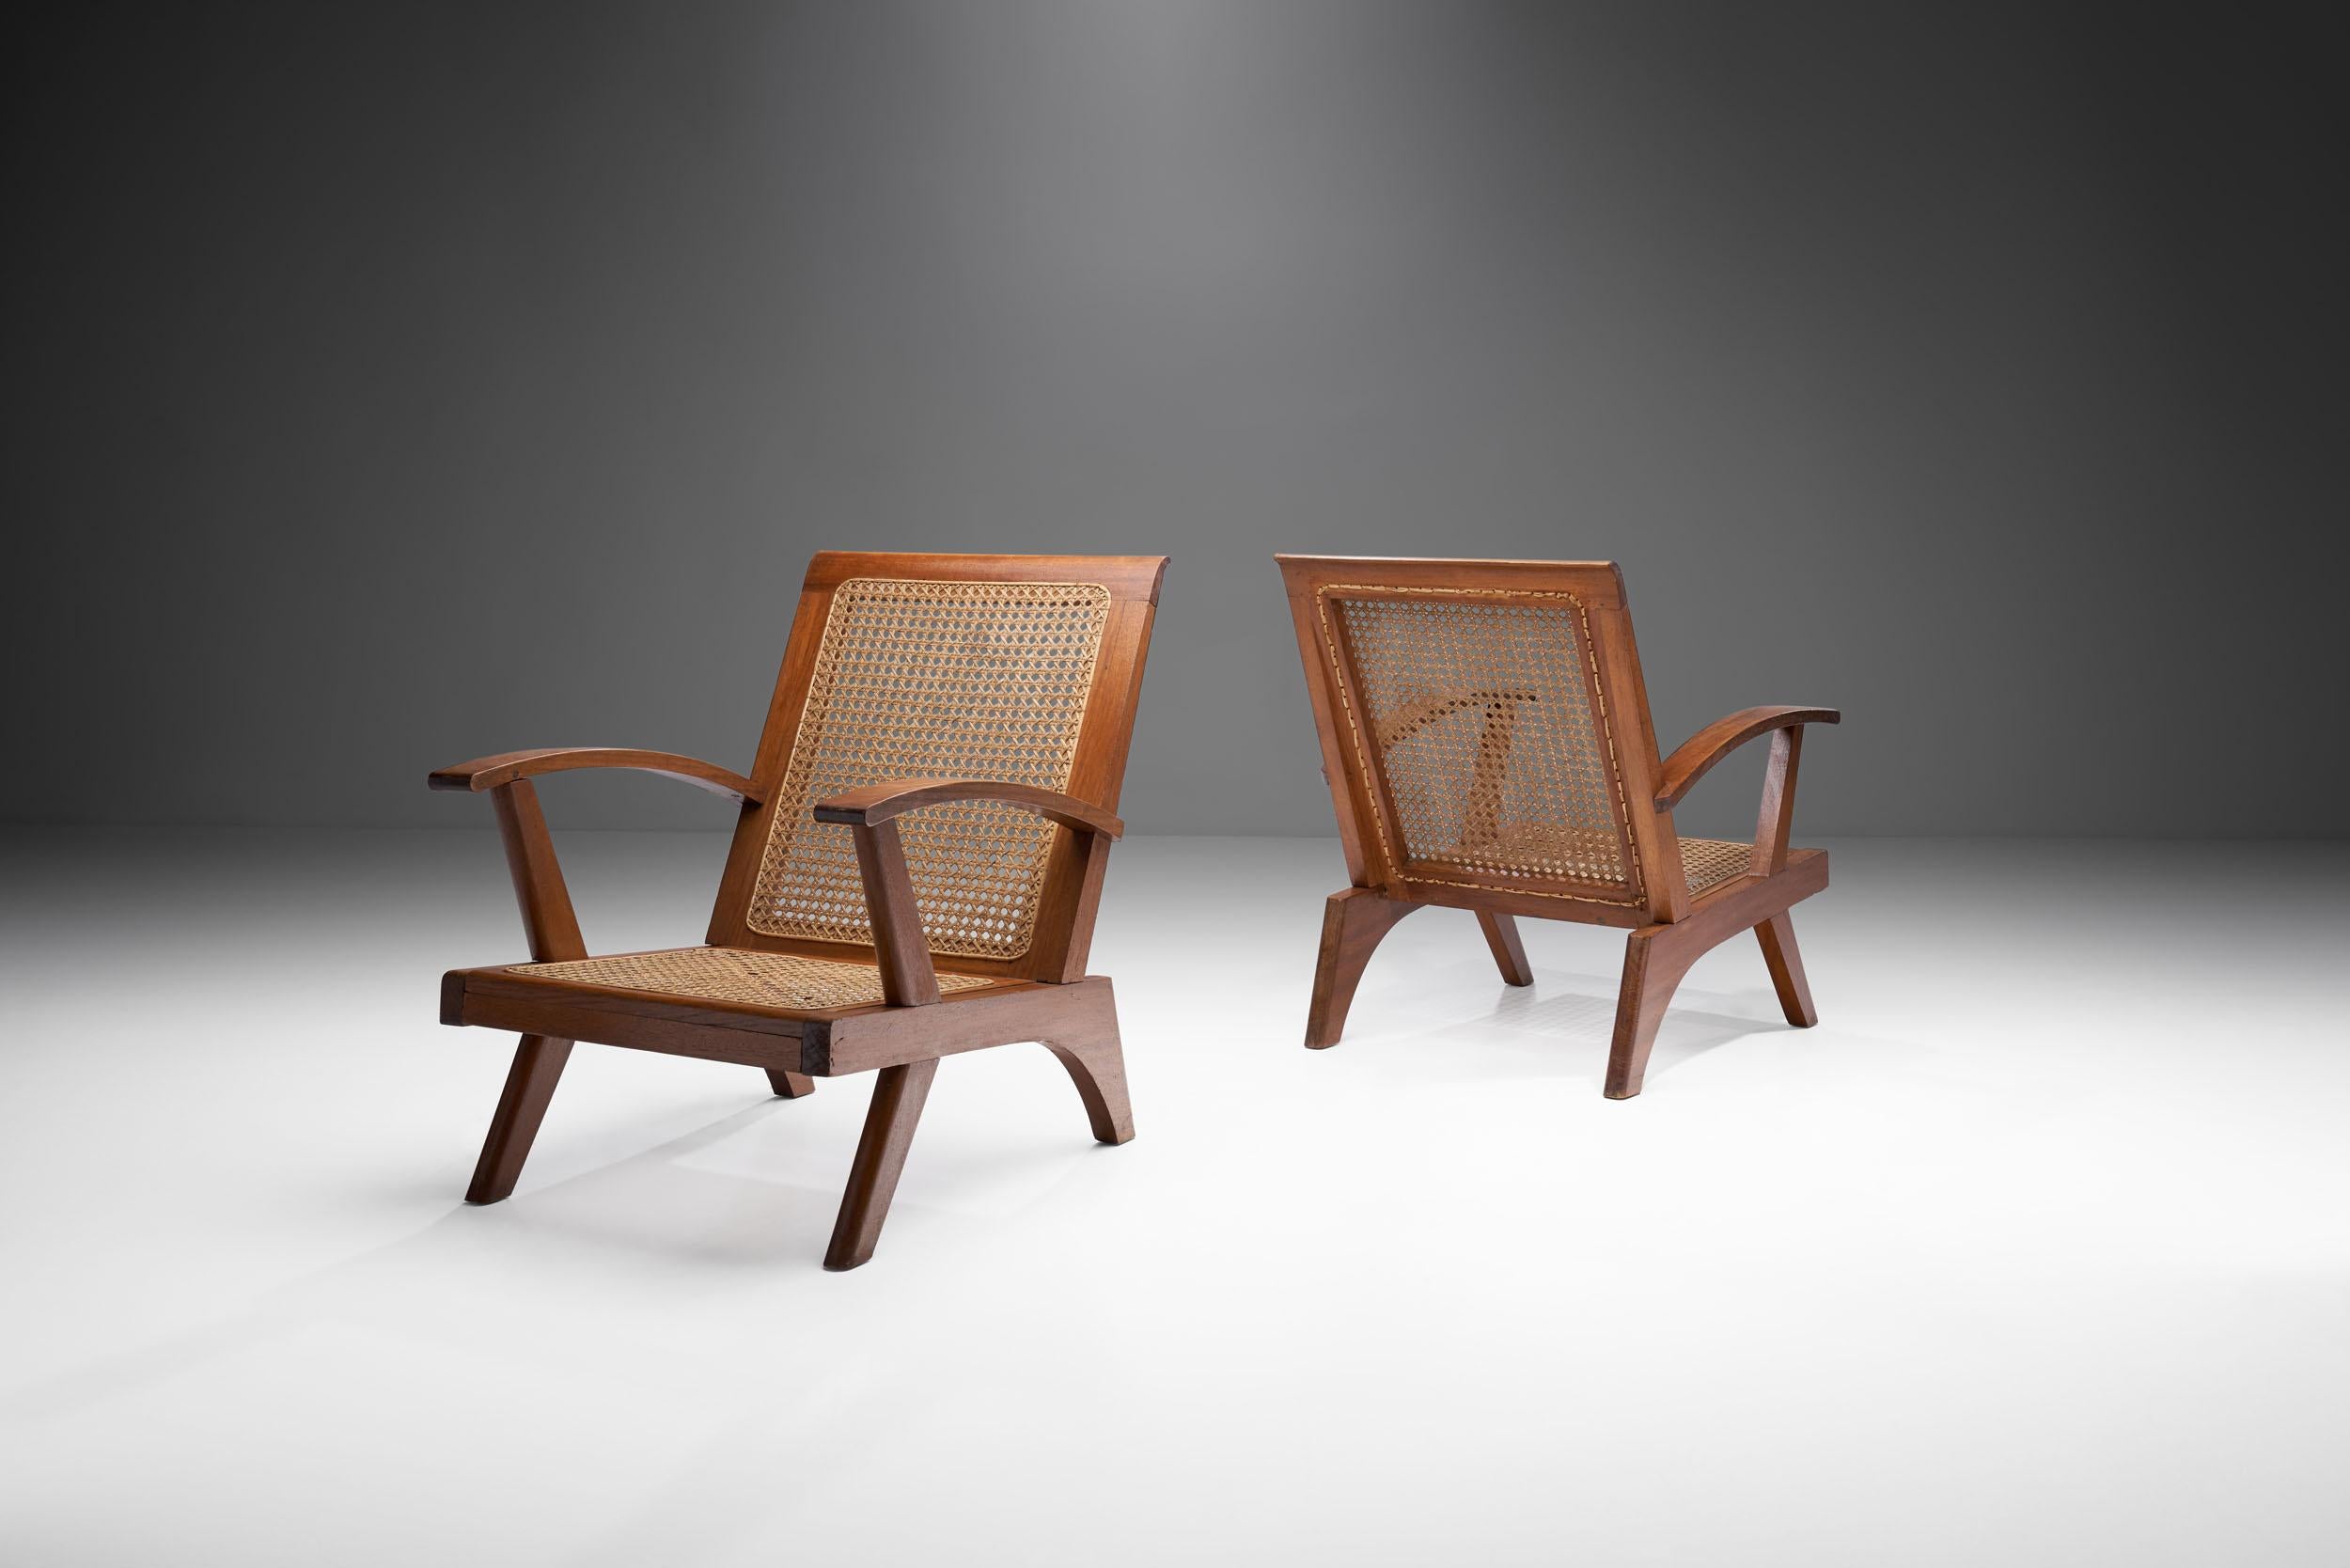 Dieses Paar französischer Sessel aus der Mitte des Jahrhunderts verbindet eine optisch beeindruckende Struktur mit einer fachmännischen Caning-Technik und hochwertigen Materialien. 

Wie im Vereinigten Königreich und in weiten Teilen Europas kam es